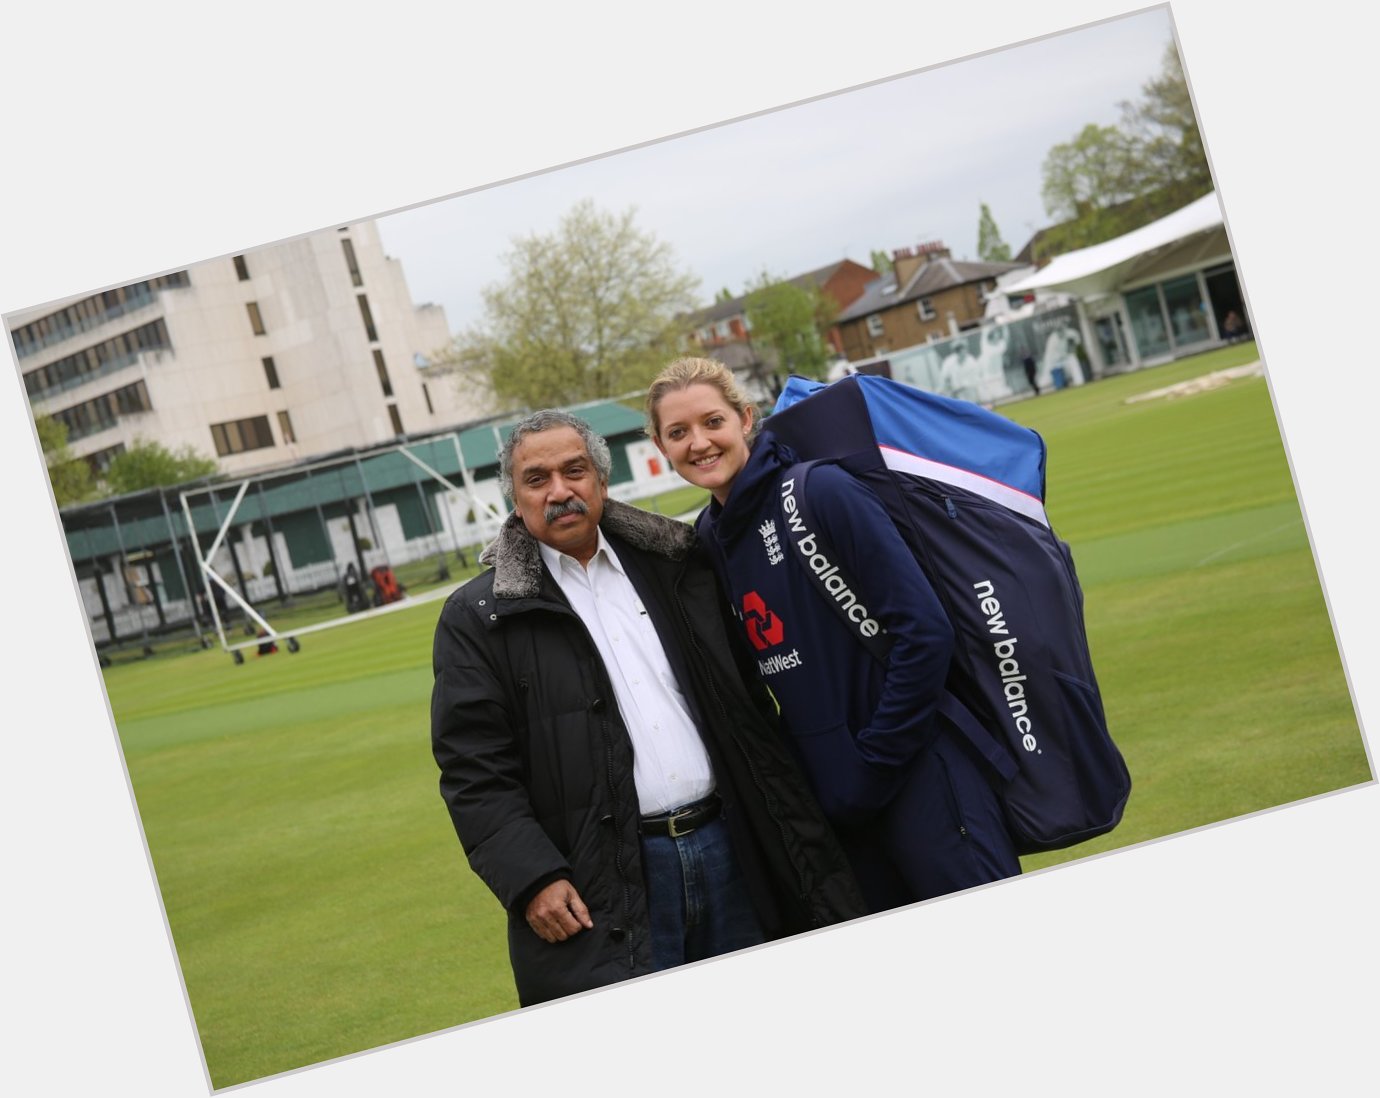 20 May Happy Birthday Sarah Taylor (Former England Wicket-Keeper)
(PC Prabhakar Kaza) 